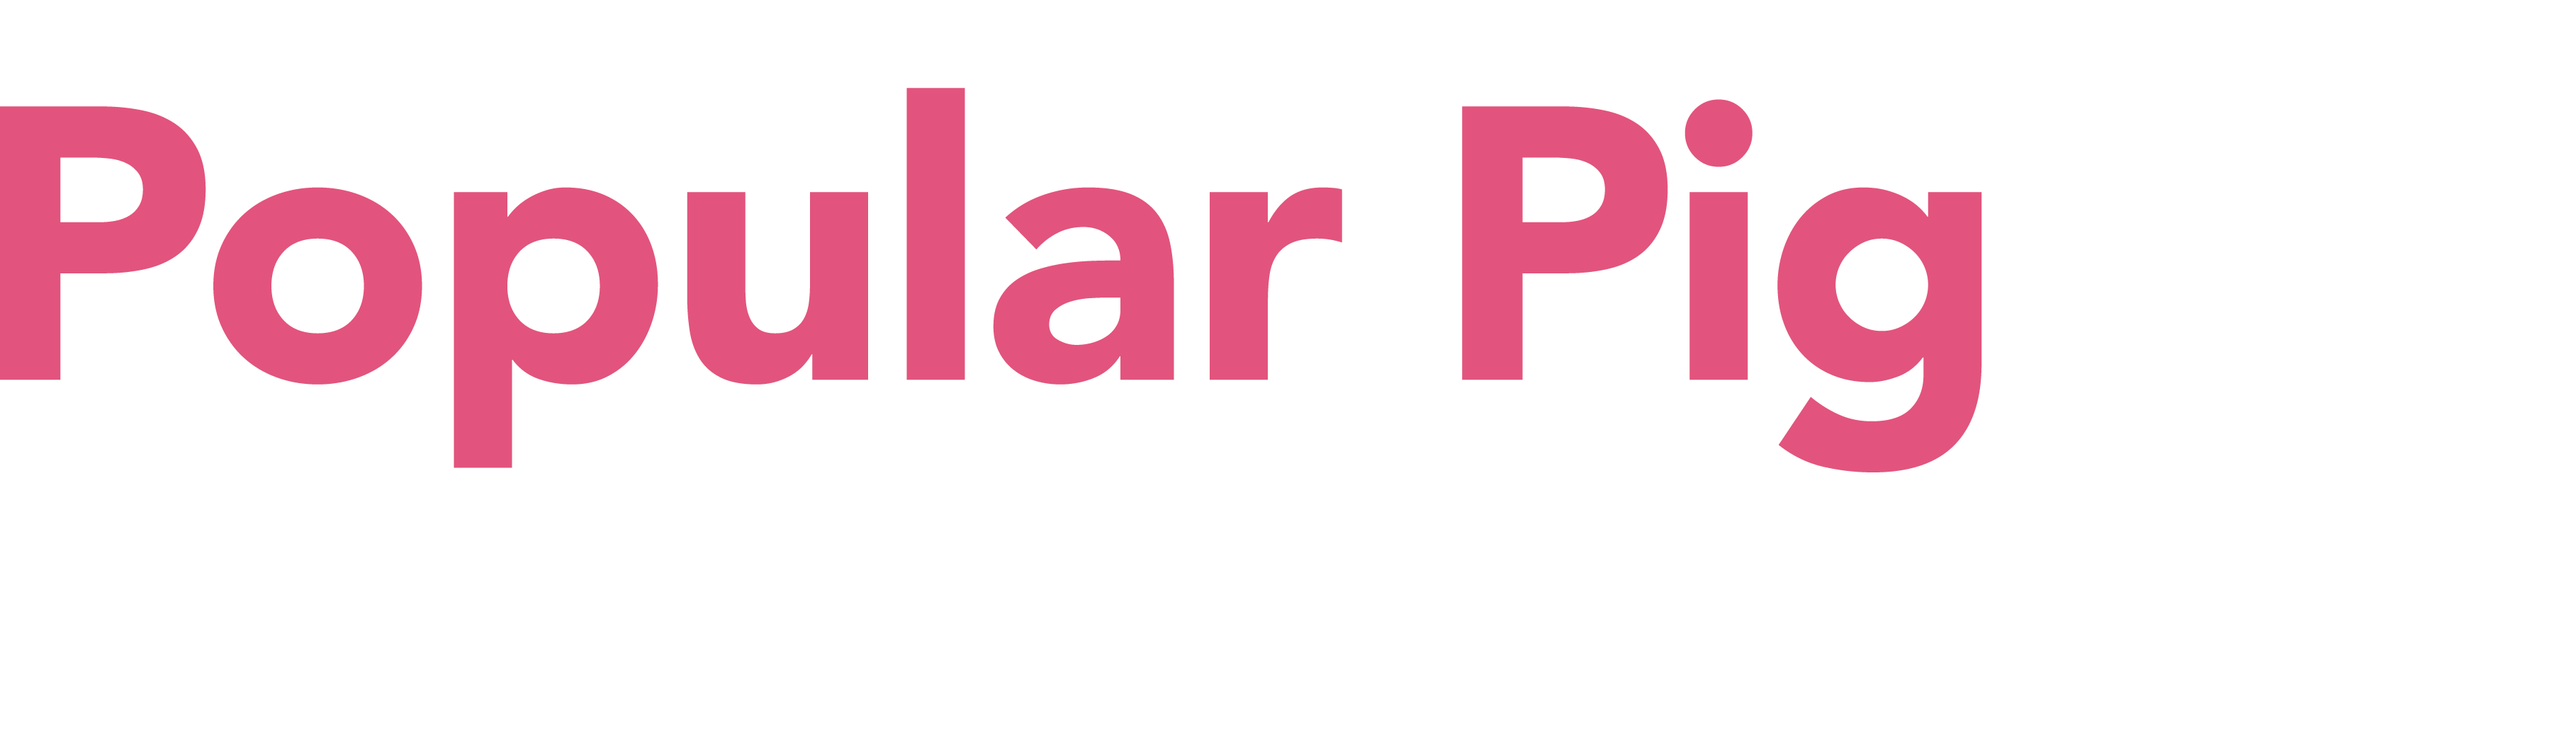 Popular Pig Podcast logo